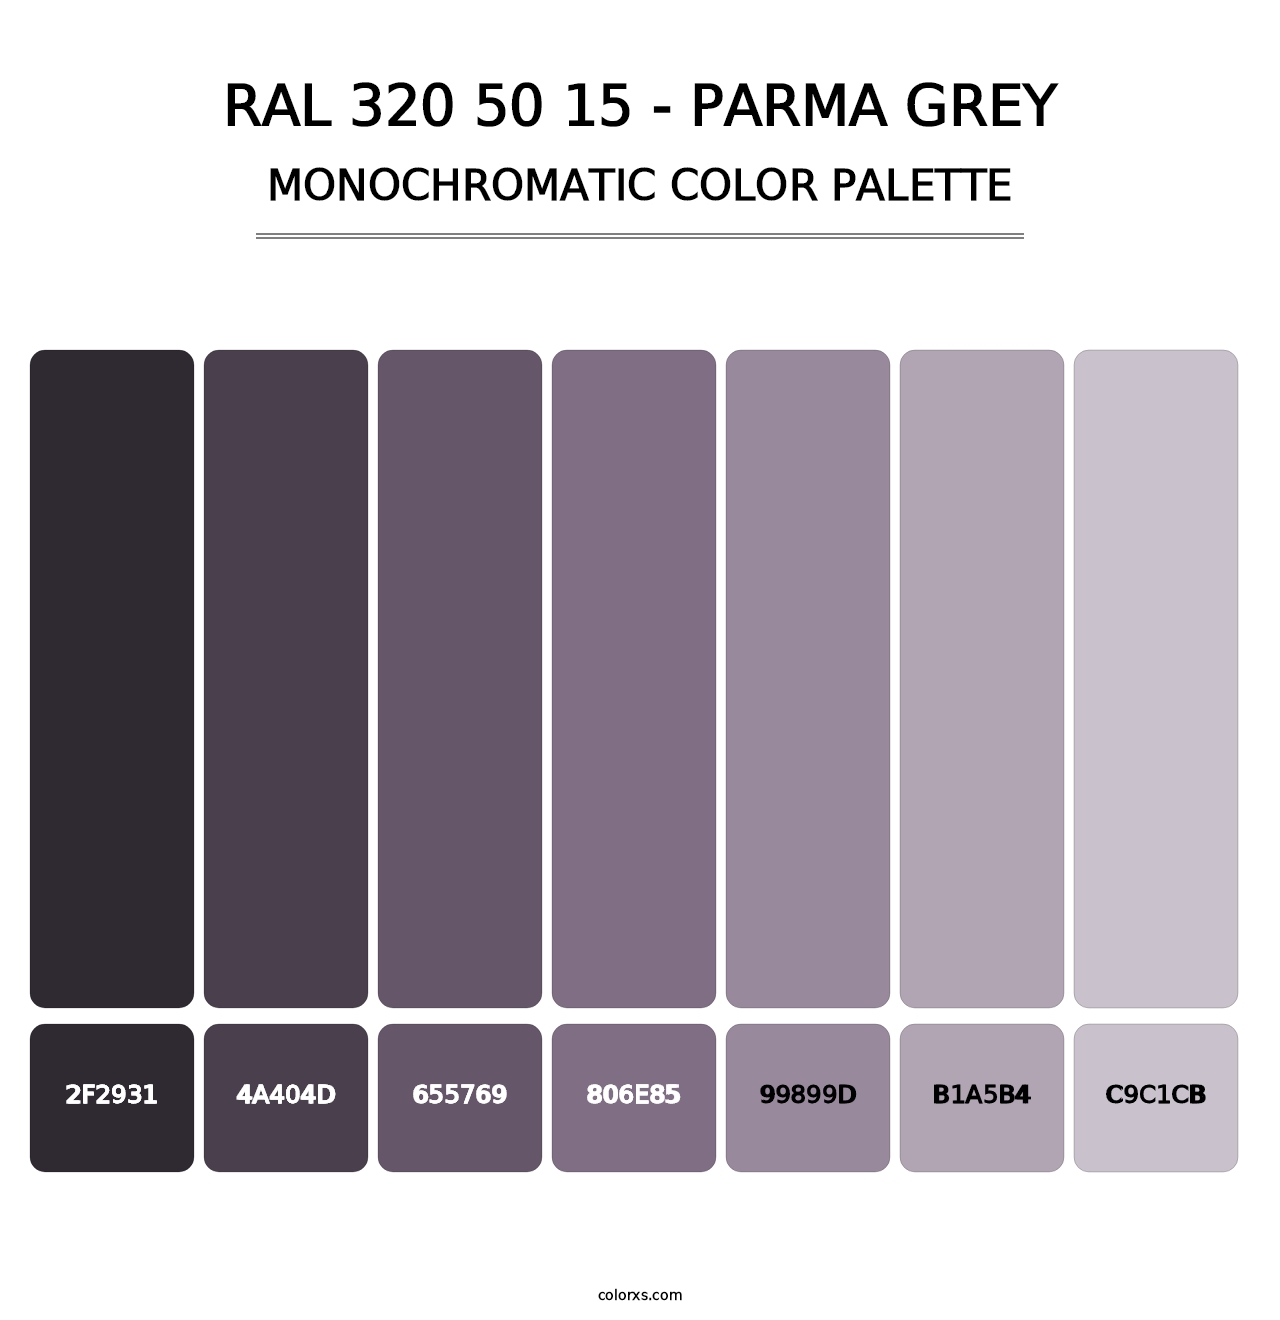 RAL 320 50 15 - Parma Grey - Monochromatic Color Palette